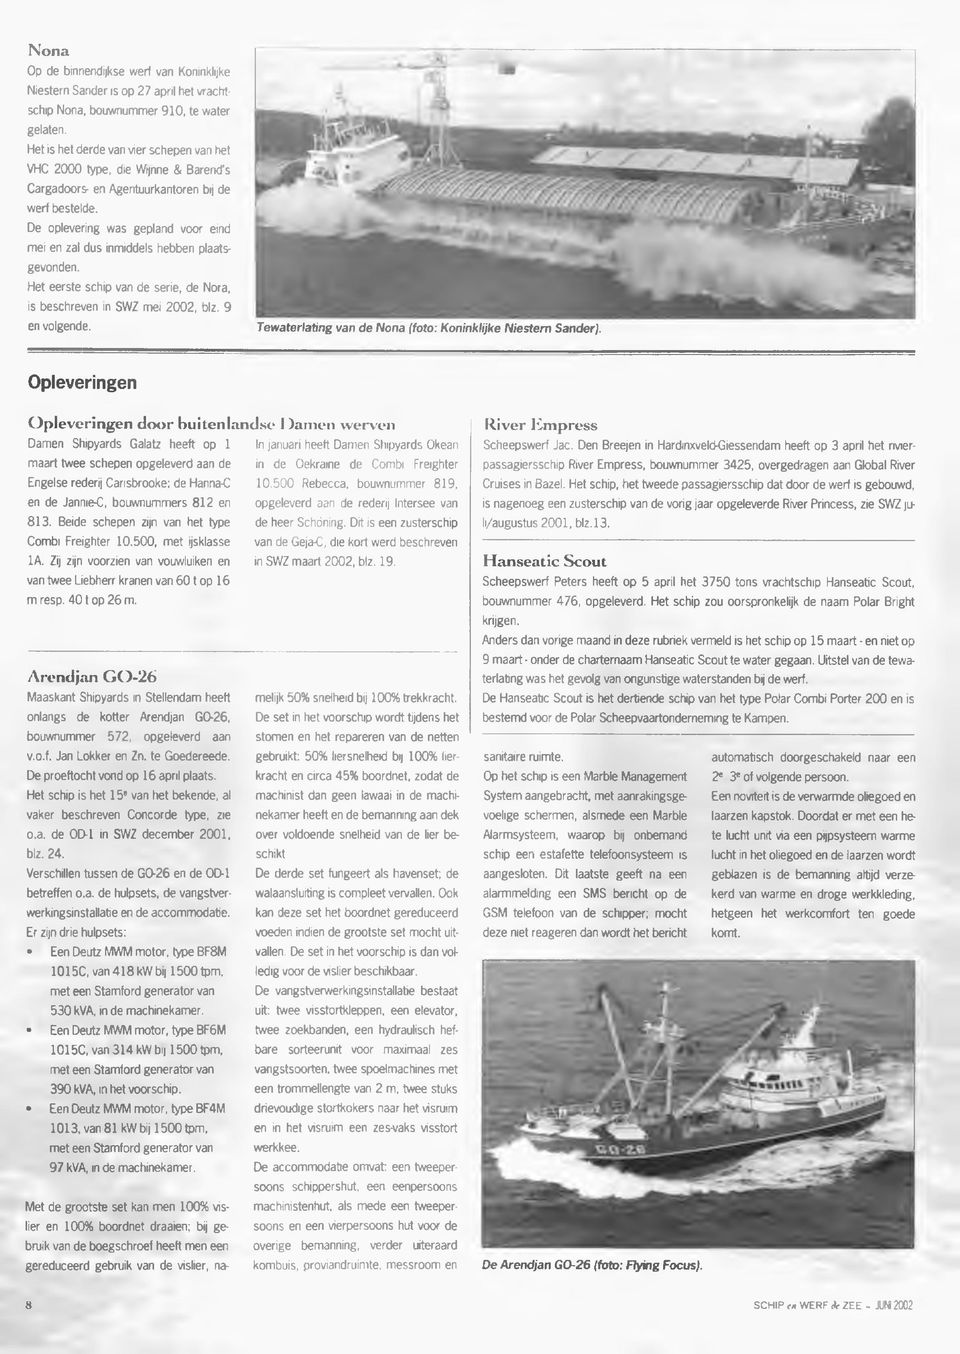 De oplevering was gepland voor eind mei en zal dus inmiddels hebben plaatsgevonden. Het eerste schip van de serie, de Nora, is beschreven in SWZ mei 2002, blz. 9 en volgende.